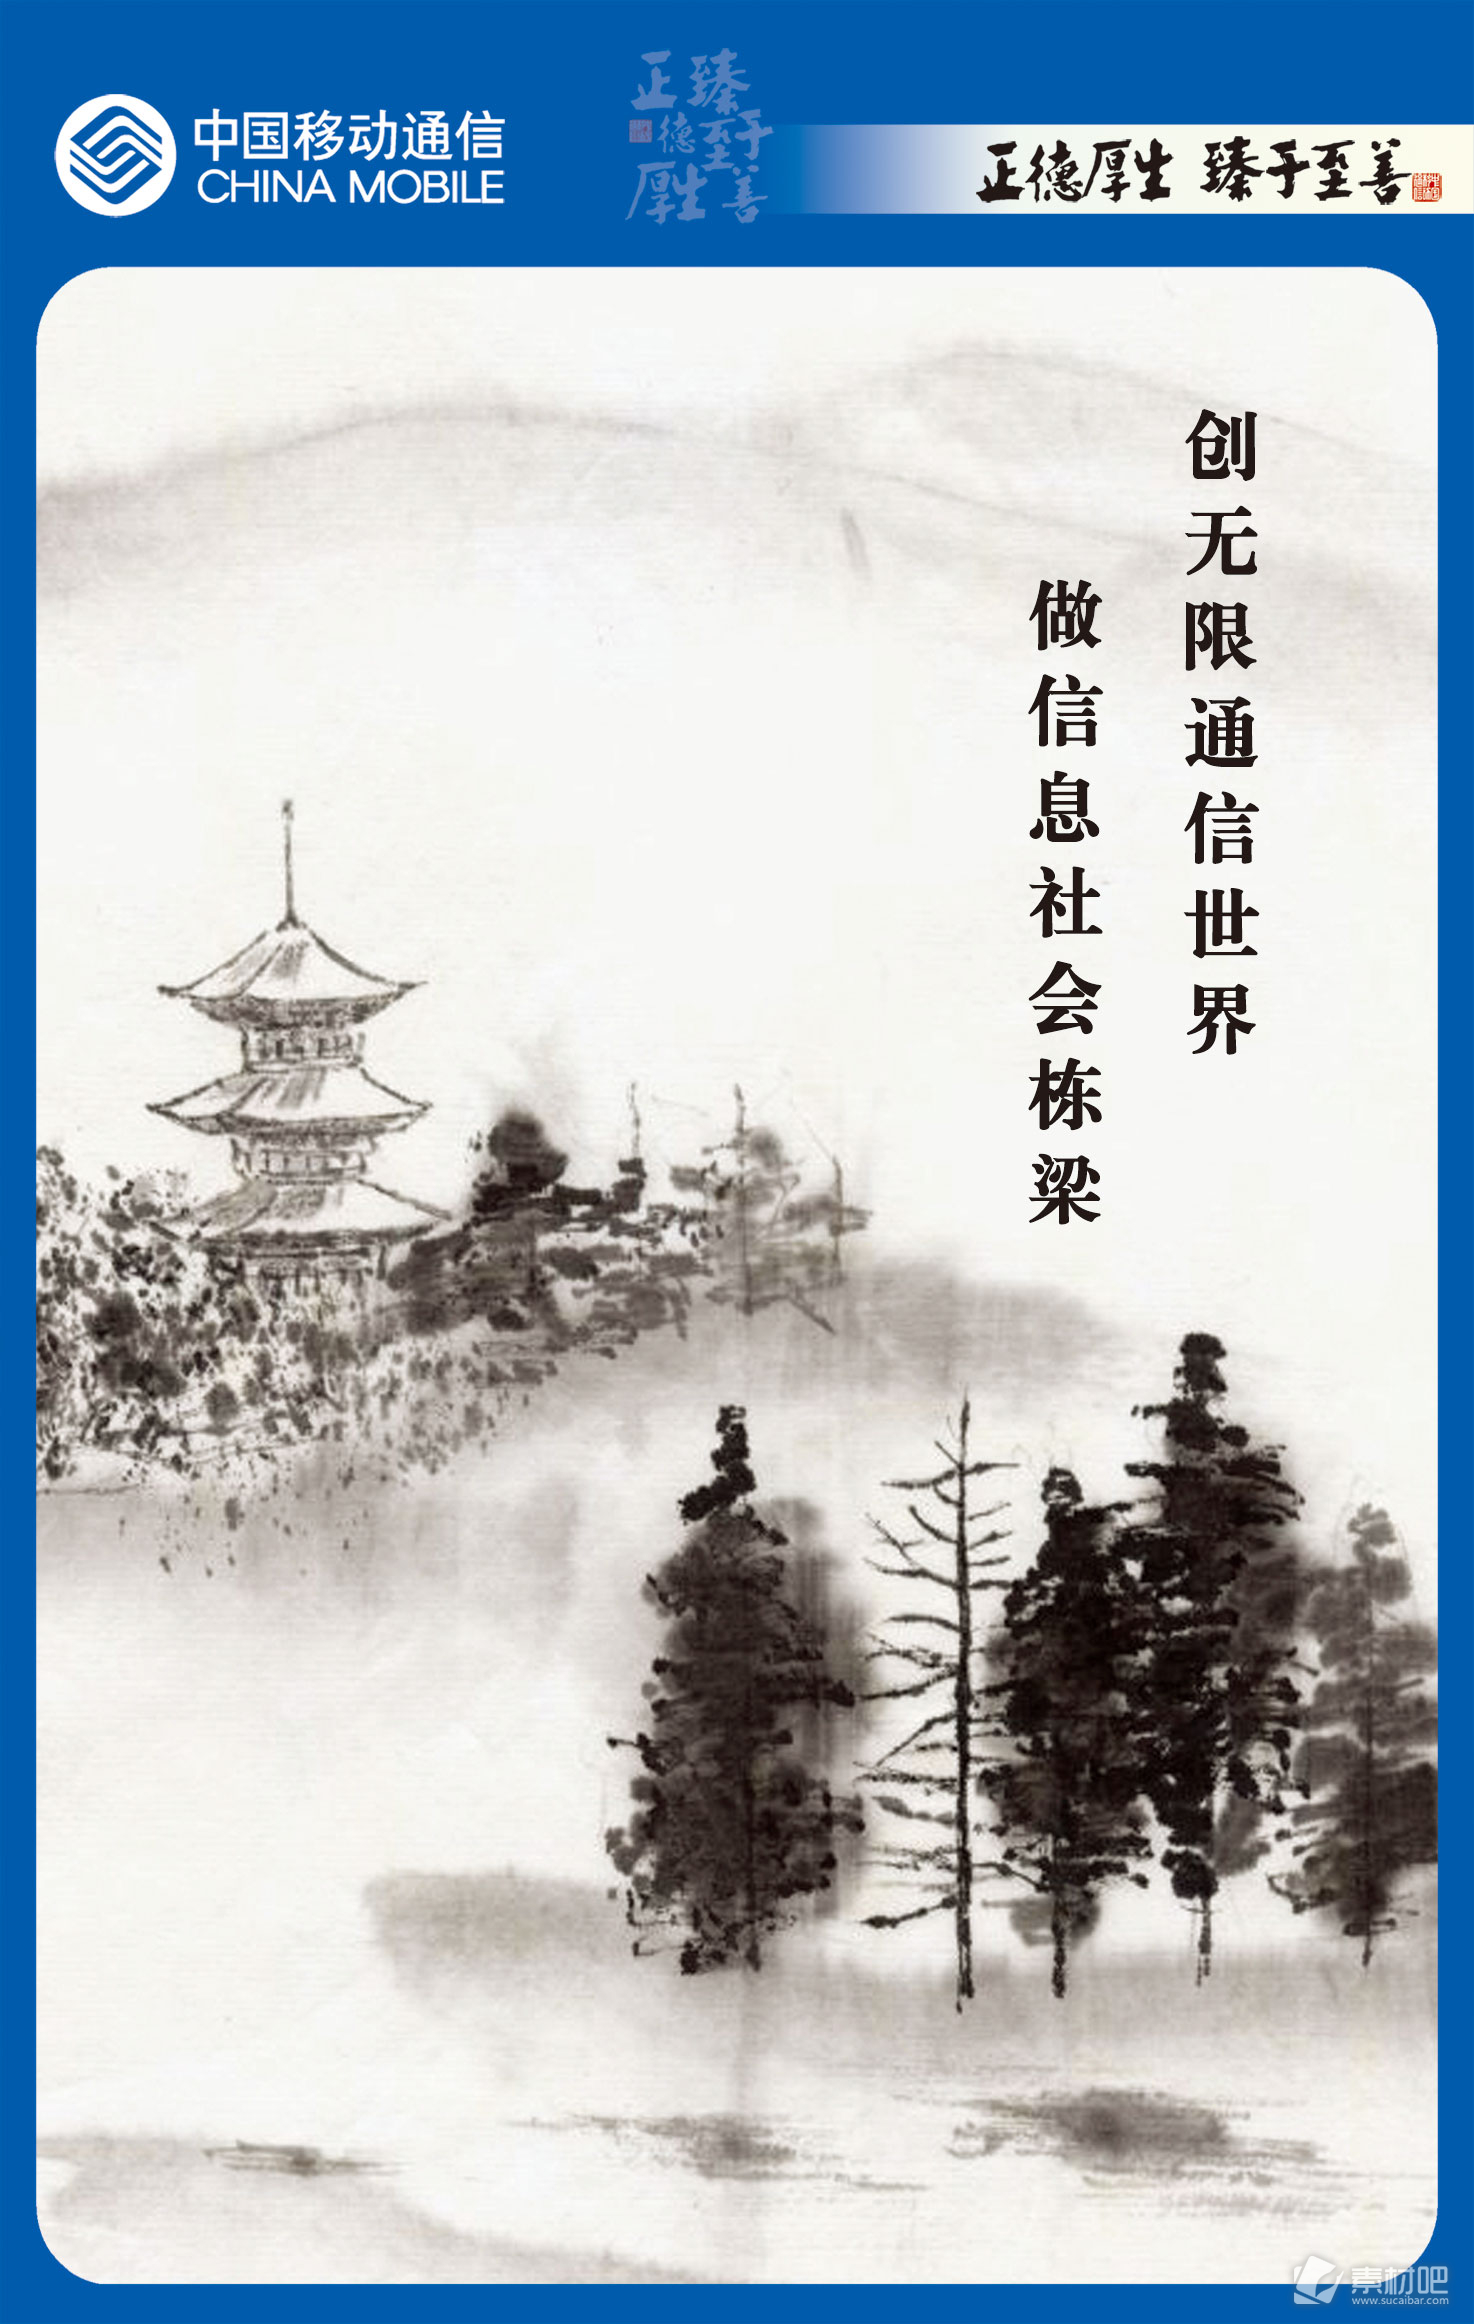 中国移动蓝色边框树木水墨画PSD素材